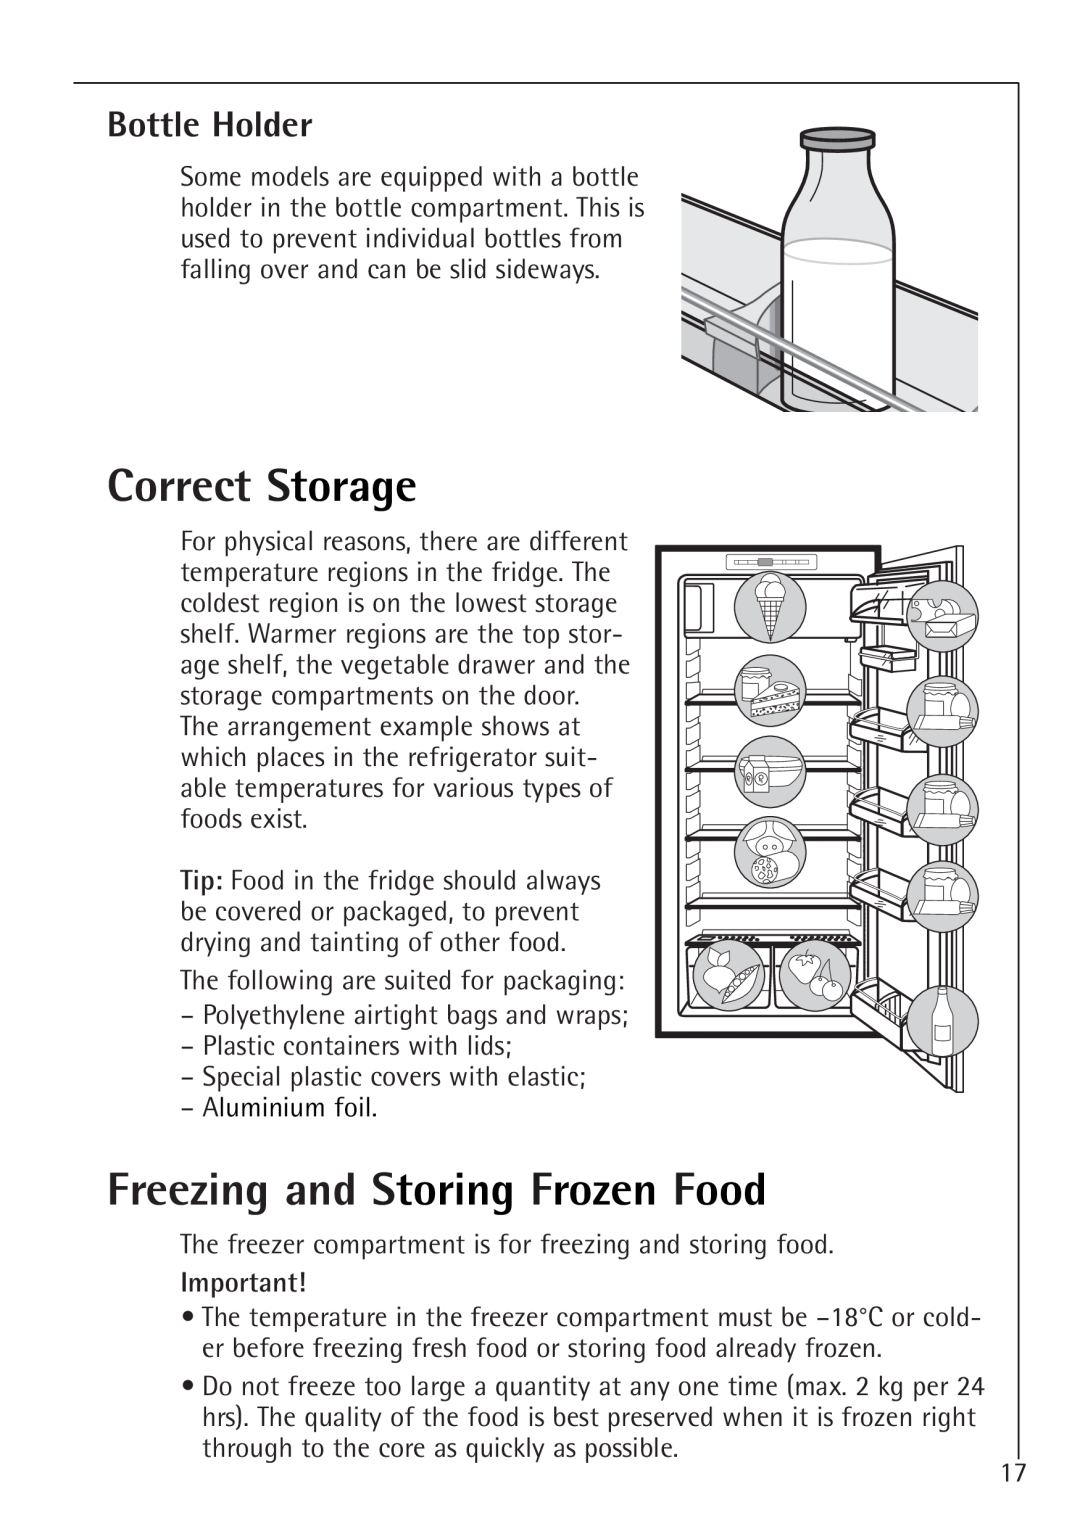 Electrolux K 91240-4 i, K 98840-4 i manual Correct Storage, Freezing and Storing Frozen Food, Bottle Holder 